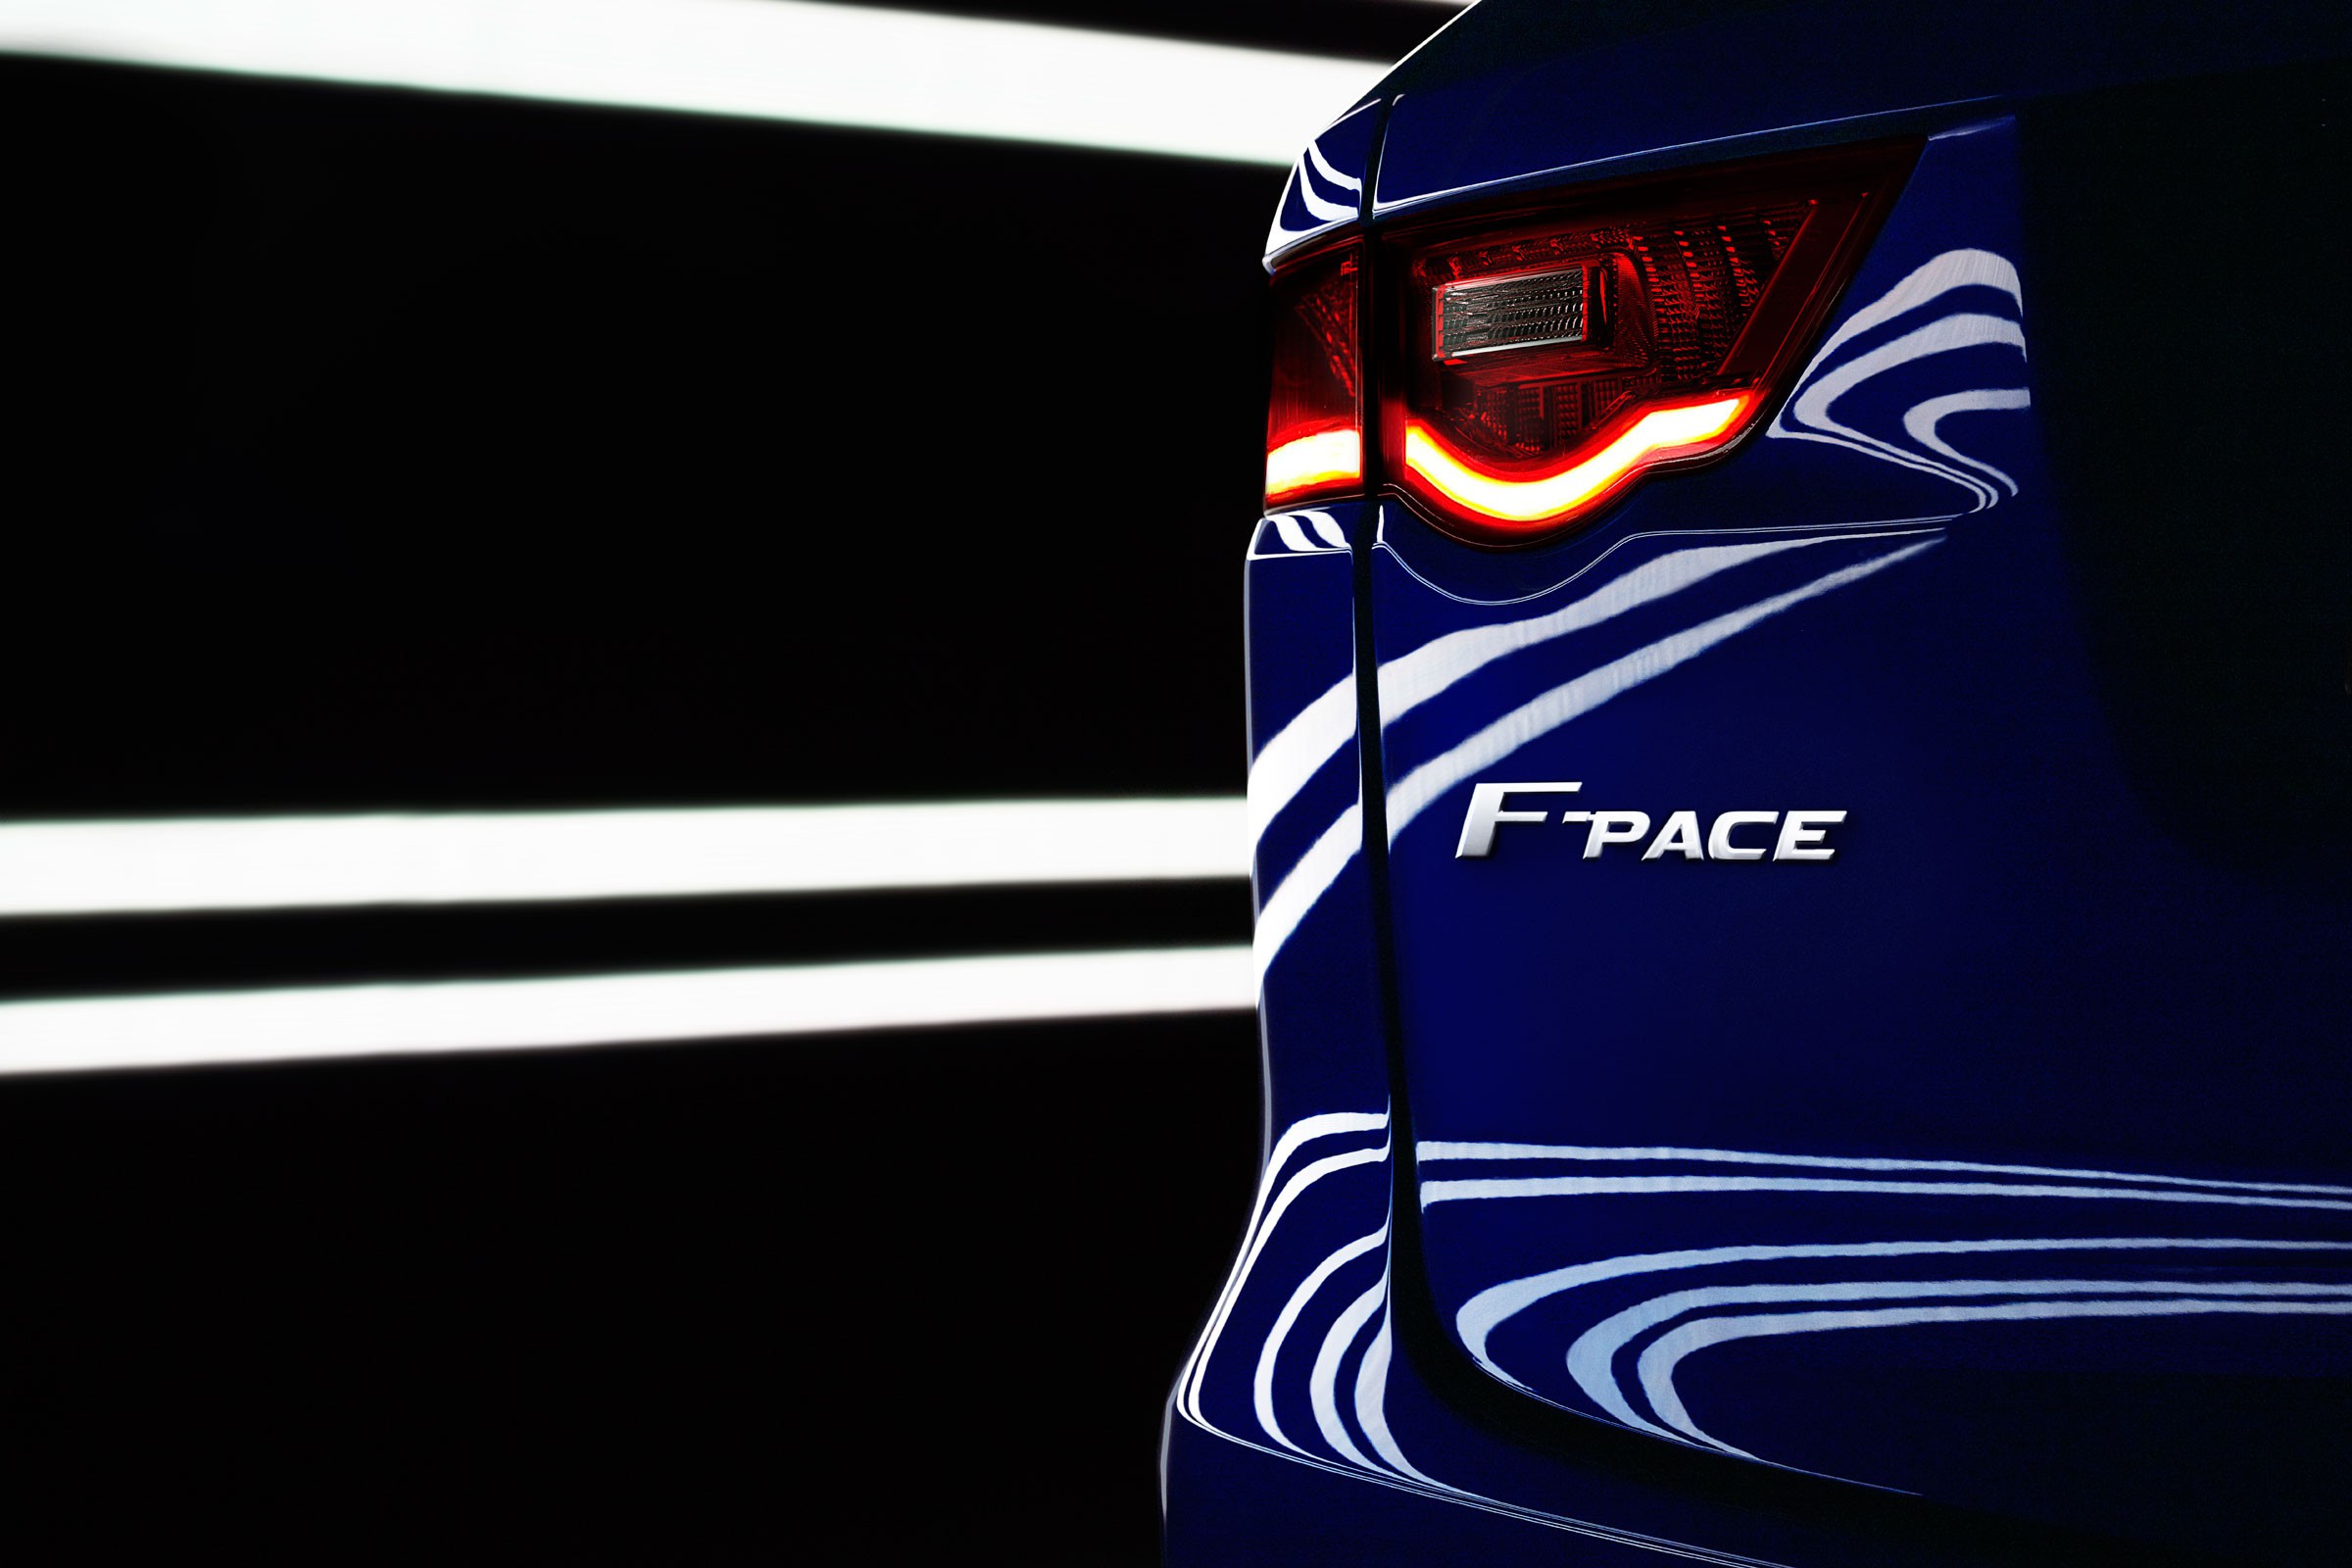 El Jaguar F-Pace se presentará en el Salón de Fráncfort de 2015